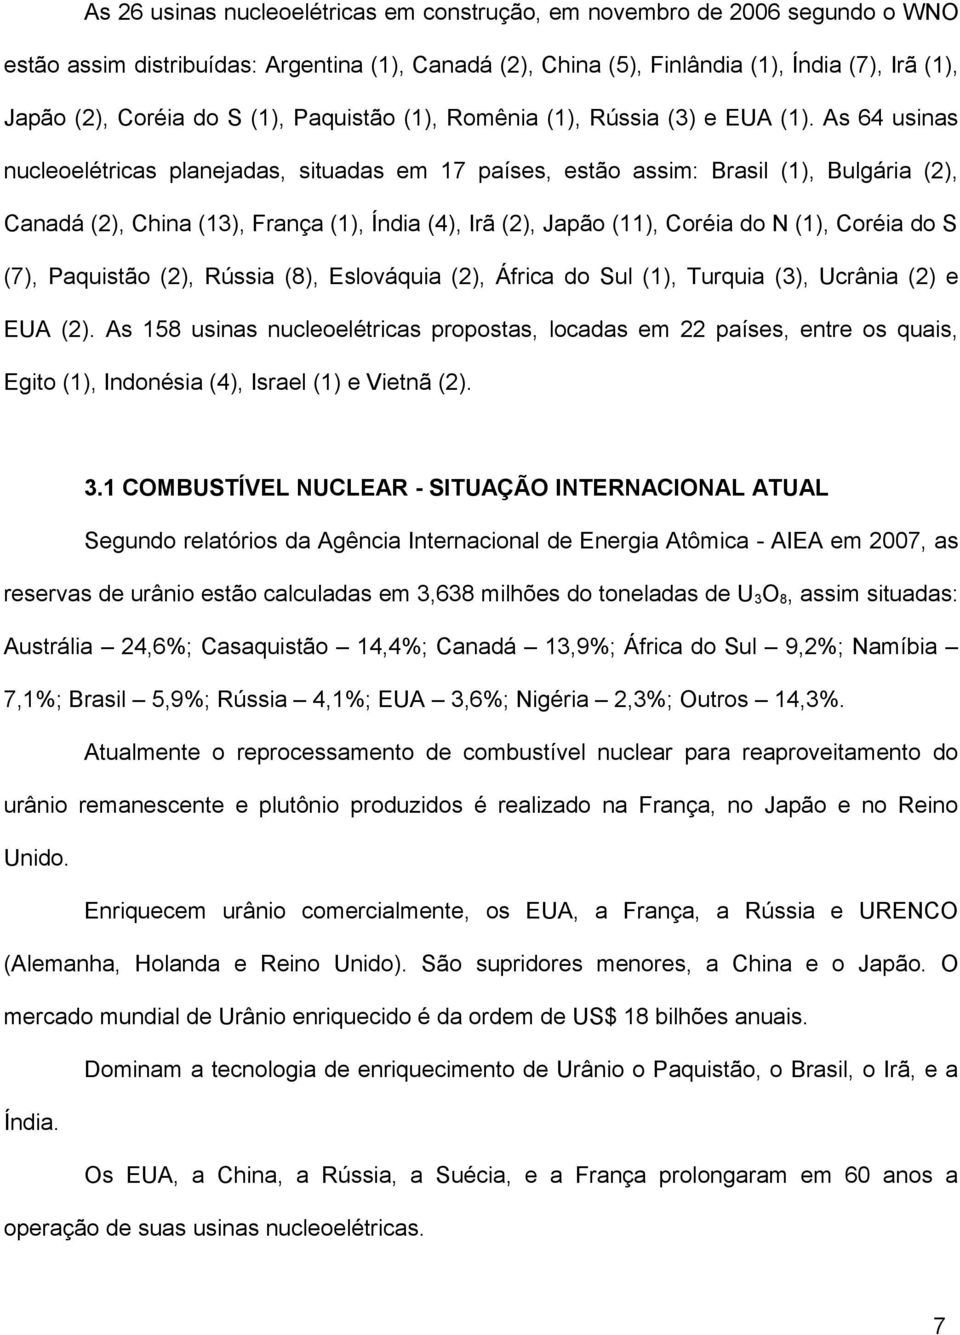 As 64 usinas nucleoelétricas planejadas, situadas em 17 países, estão assim: Brasil (1), Bulgária (2), Canadá (2), China (13), França (1), Índia (4), Irã (2), Japão (11), Coréia do N (1), Coréia do S